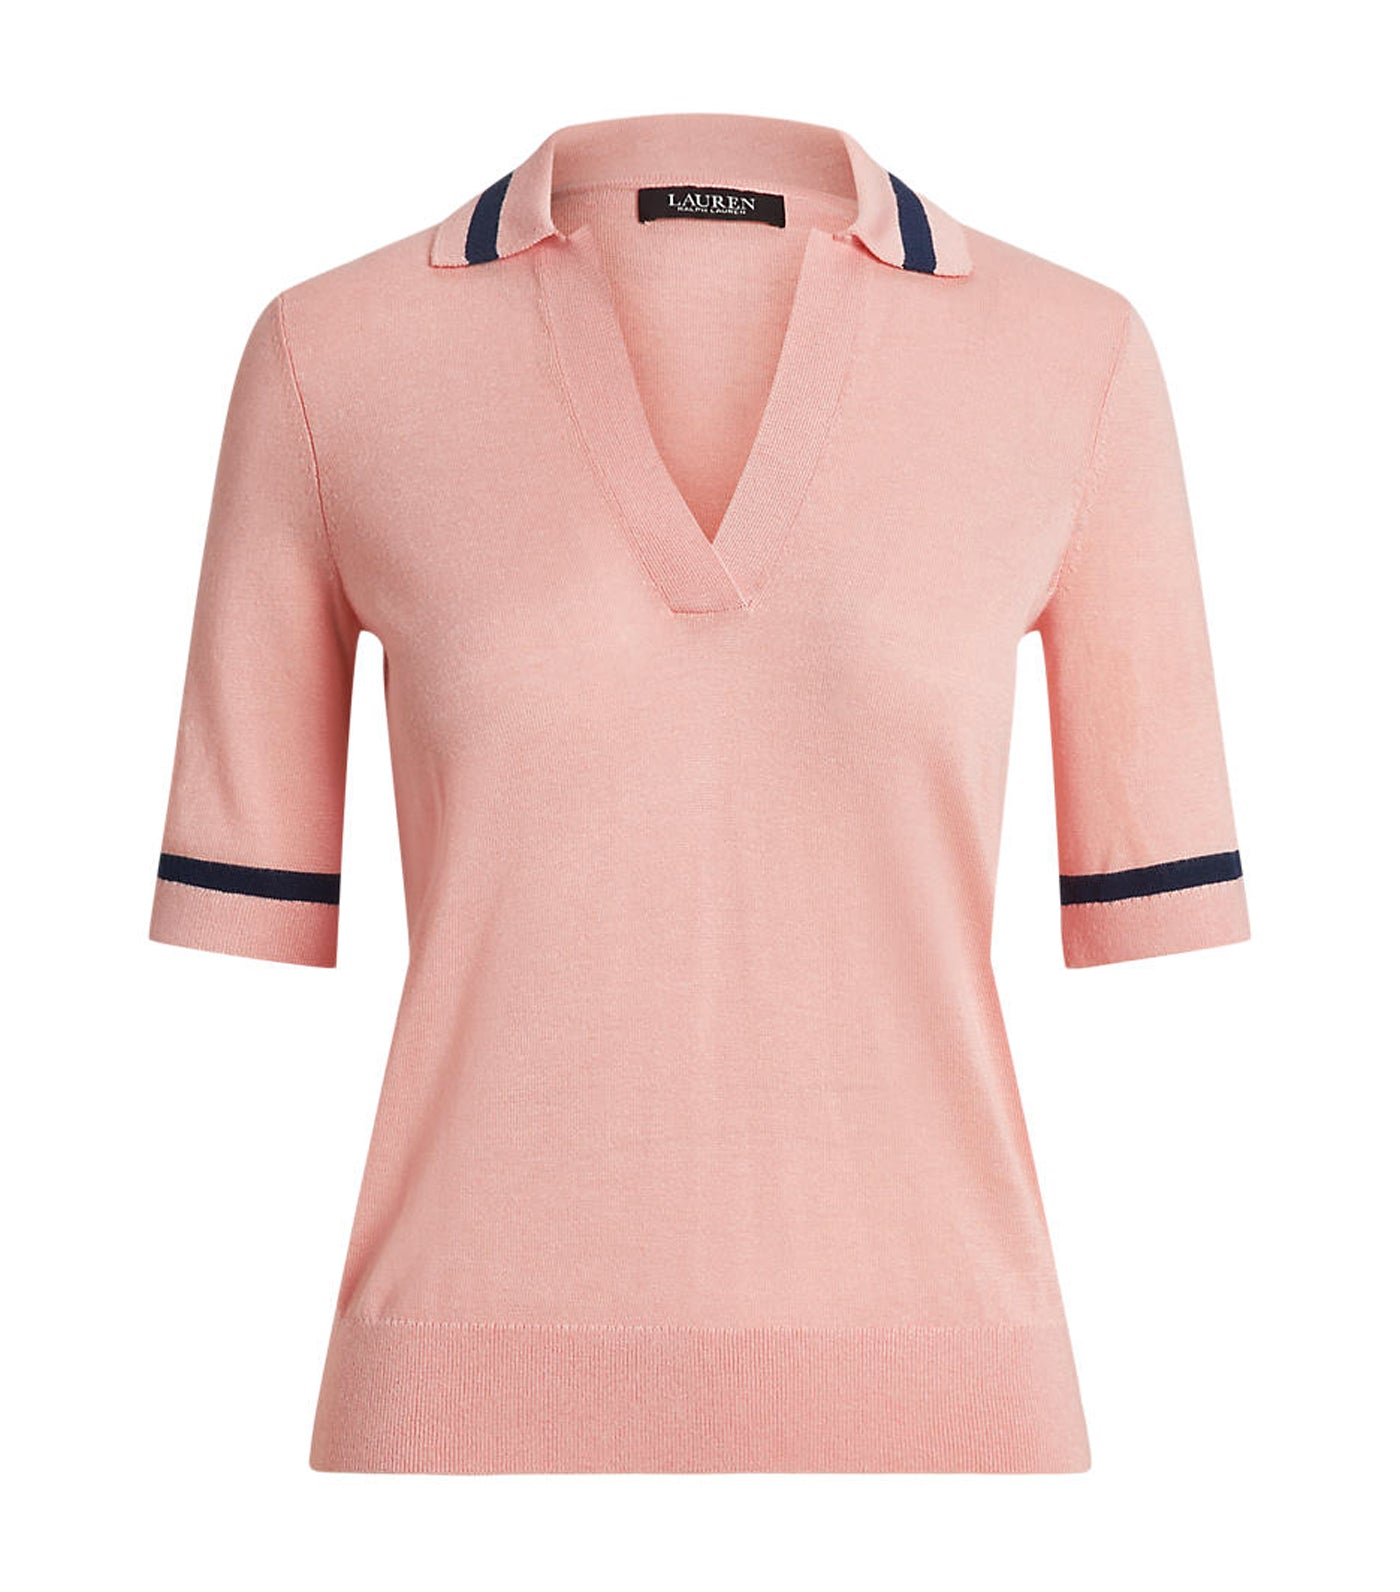 Women's Silk-Blend Short-Sleeve Sweater Pale Pink